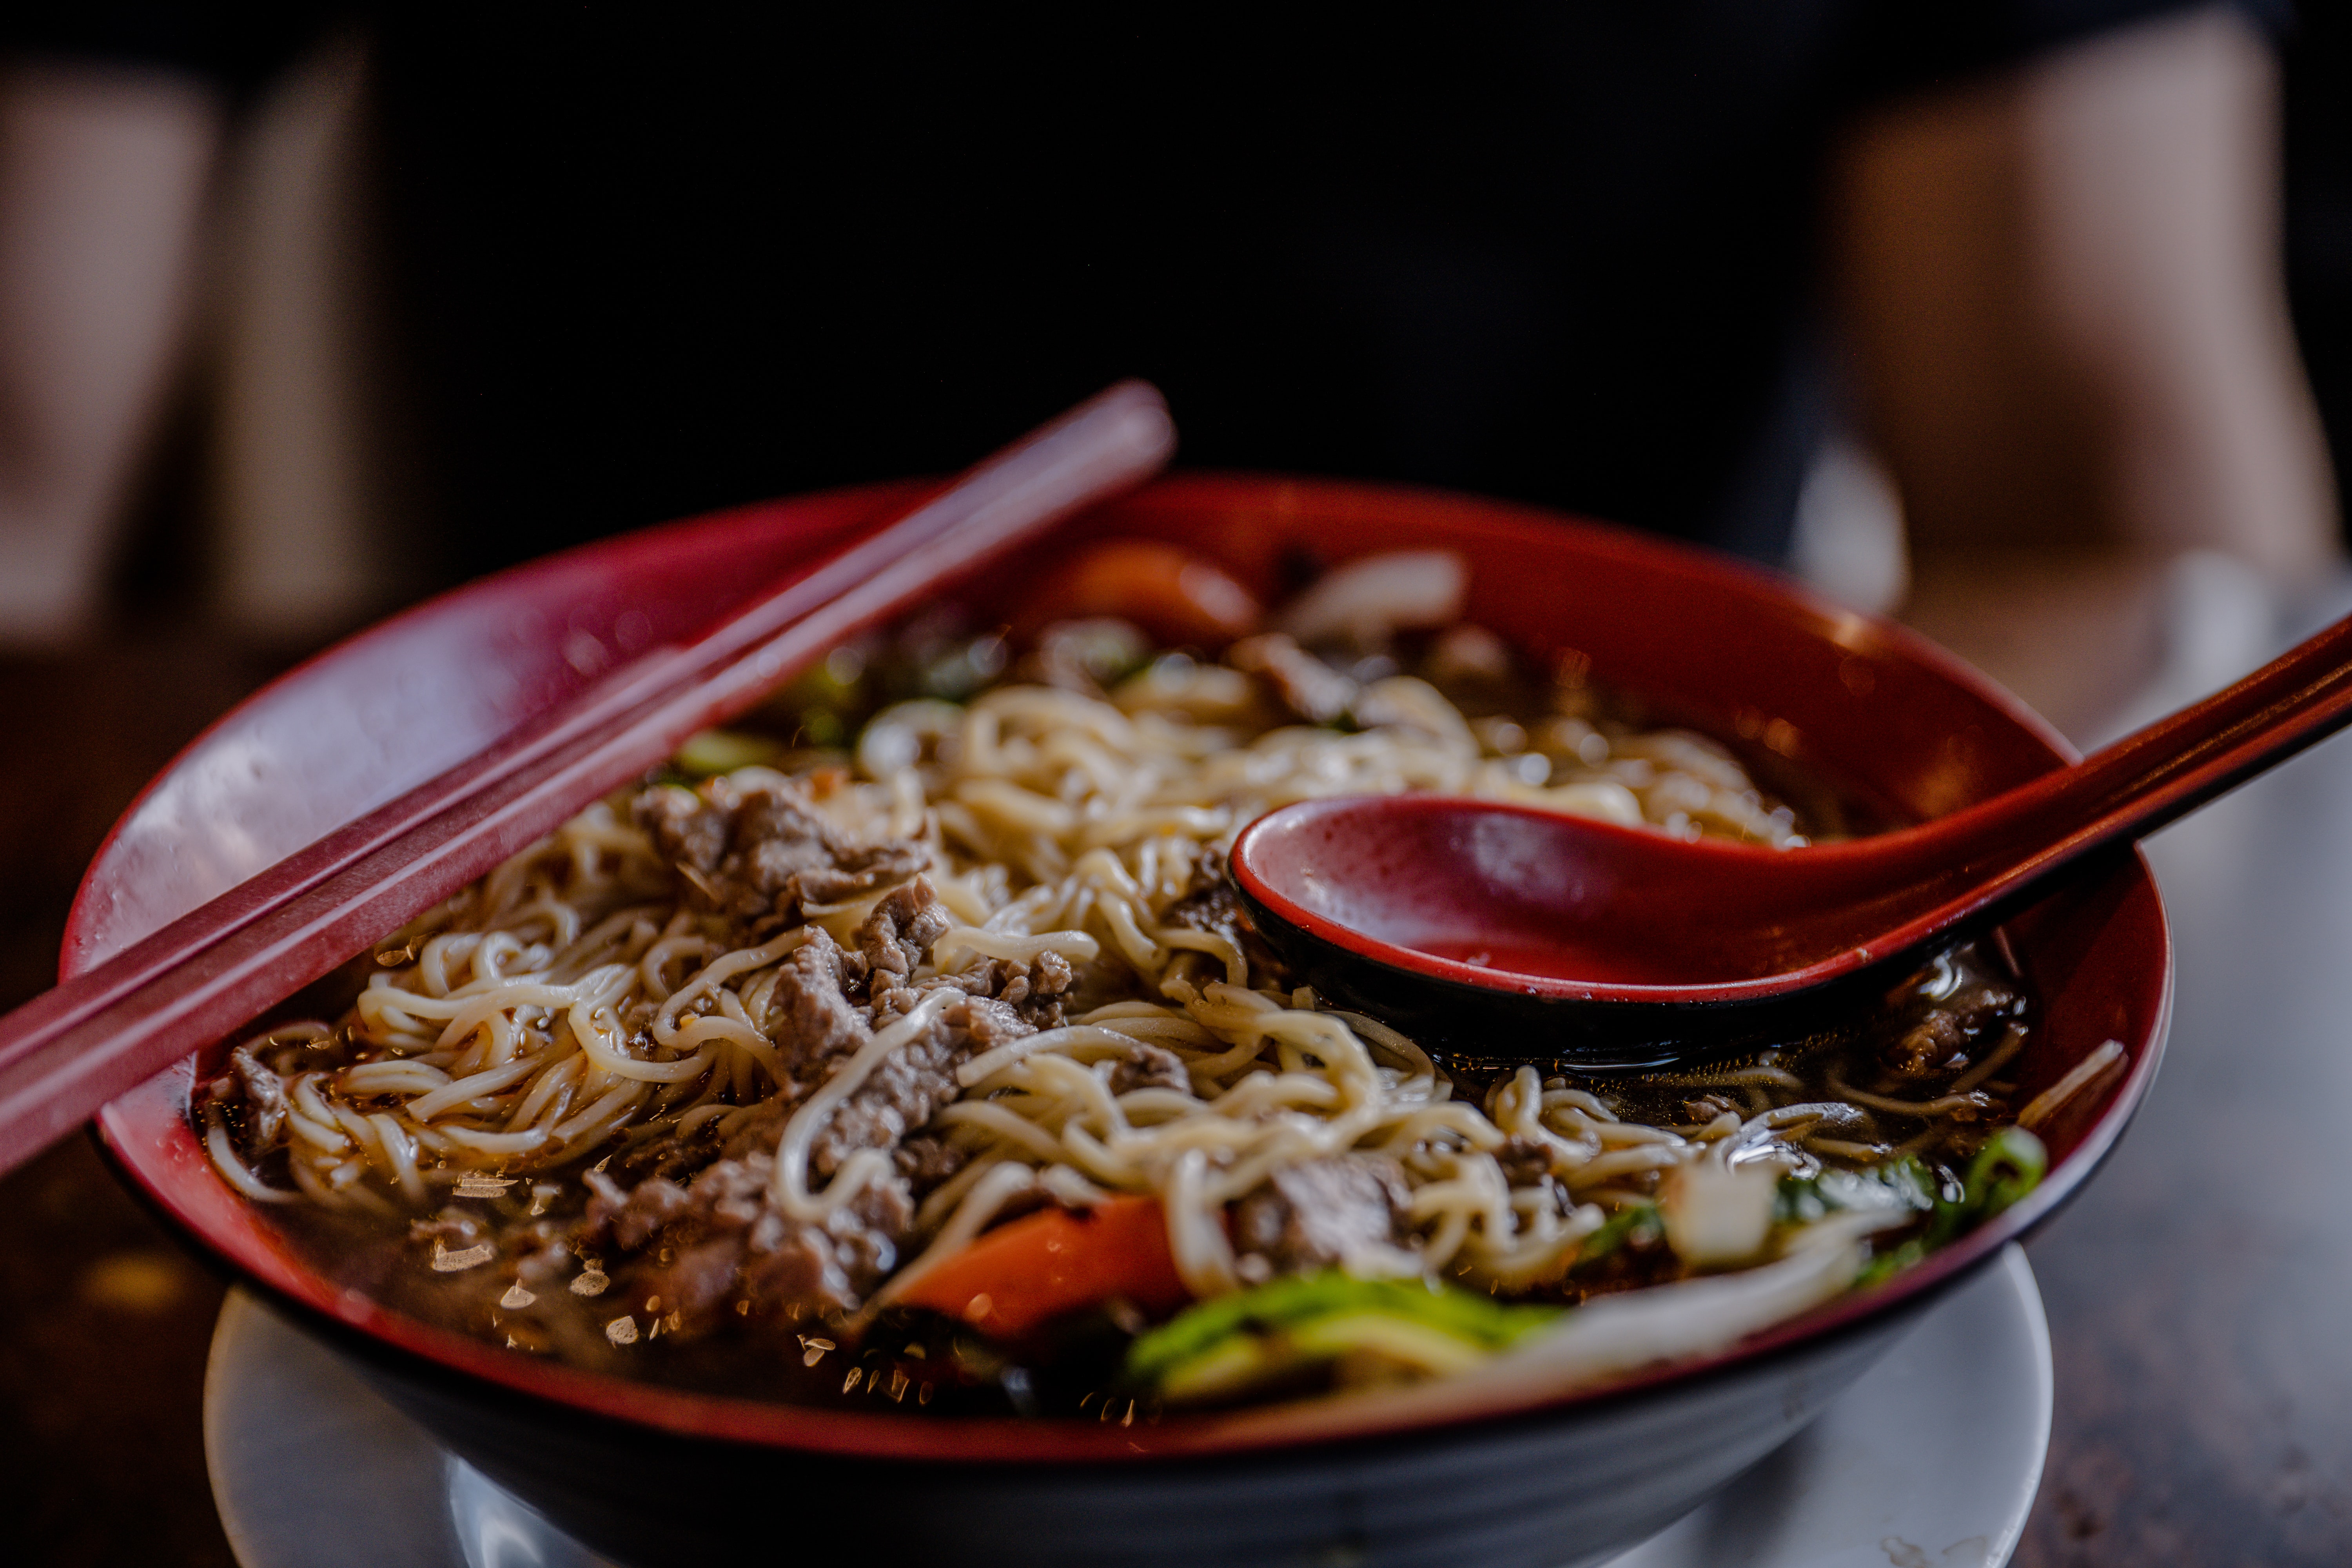 A bowl of noodles.